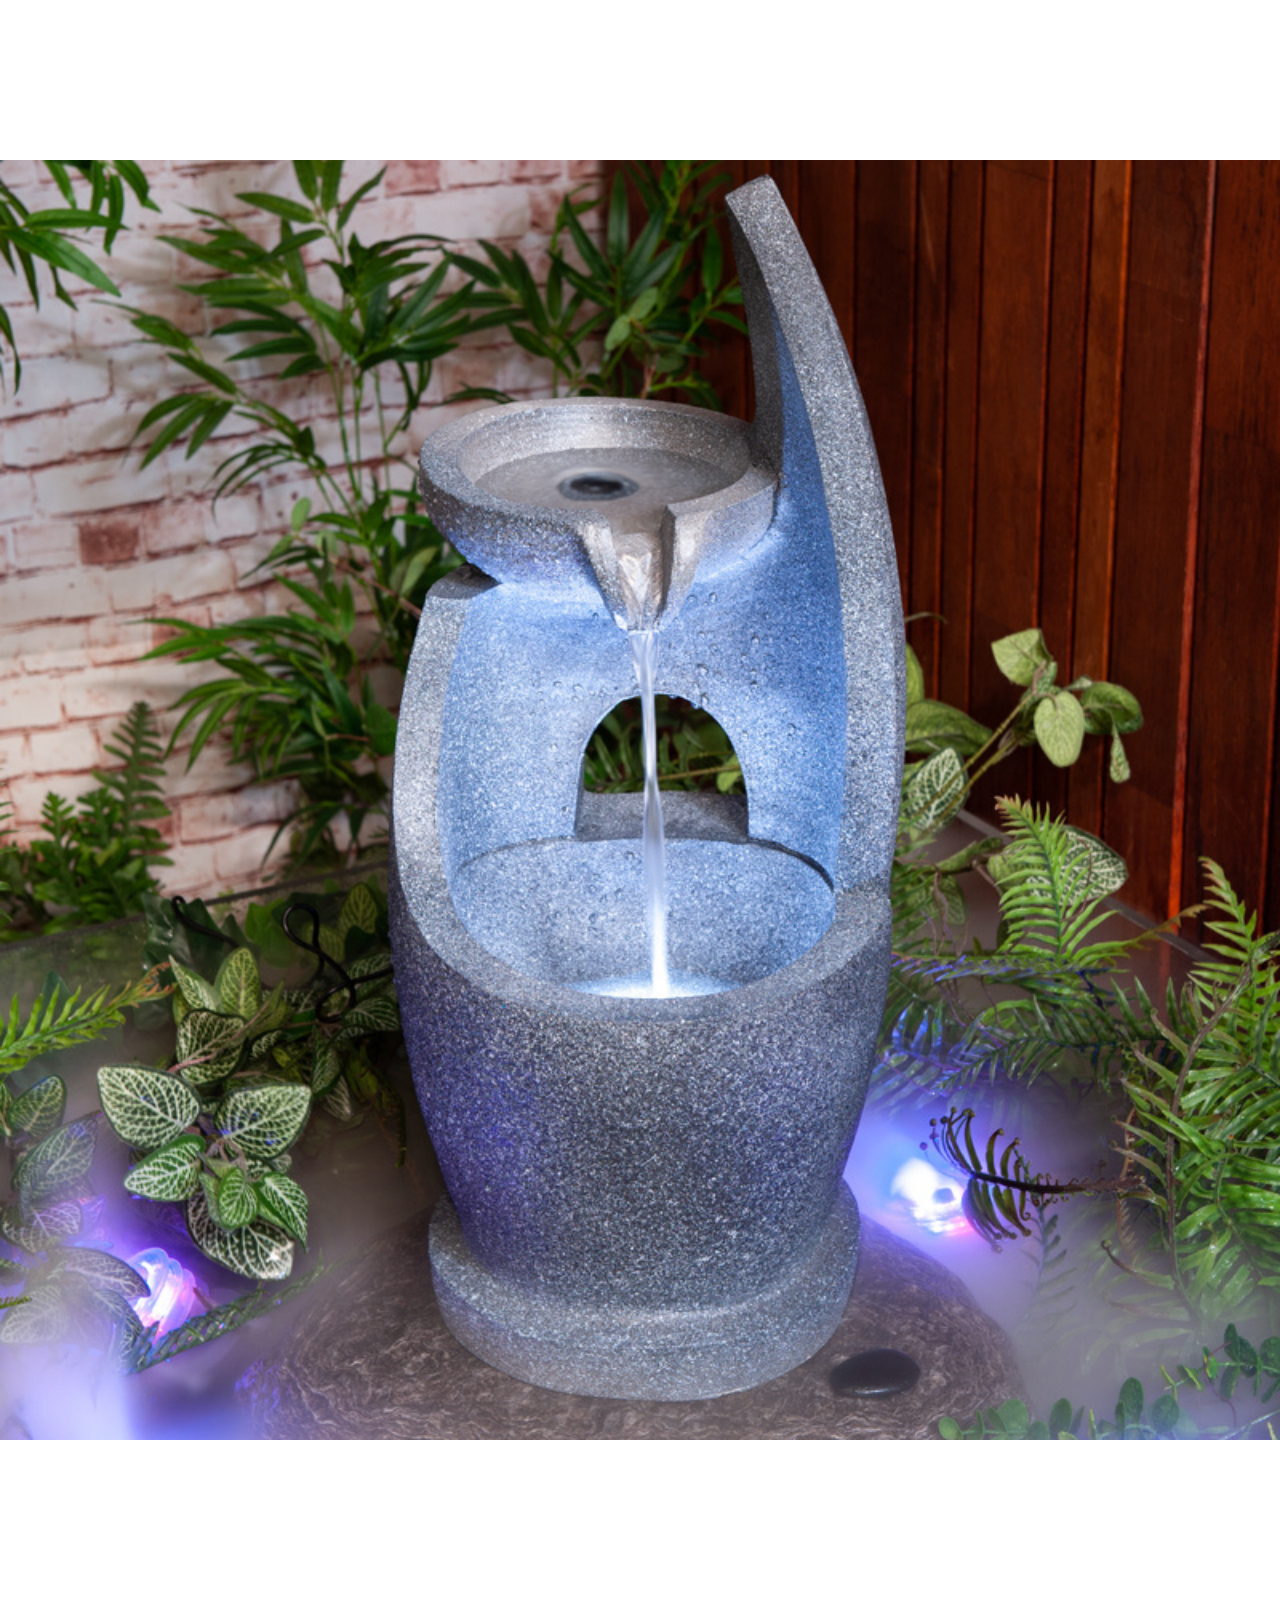 Lilt - Bowls Garden Lighting Water Feature Fountain 61cm